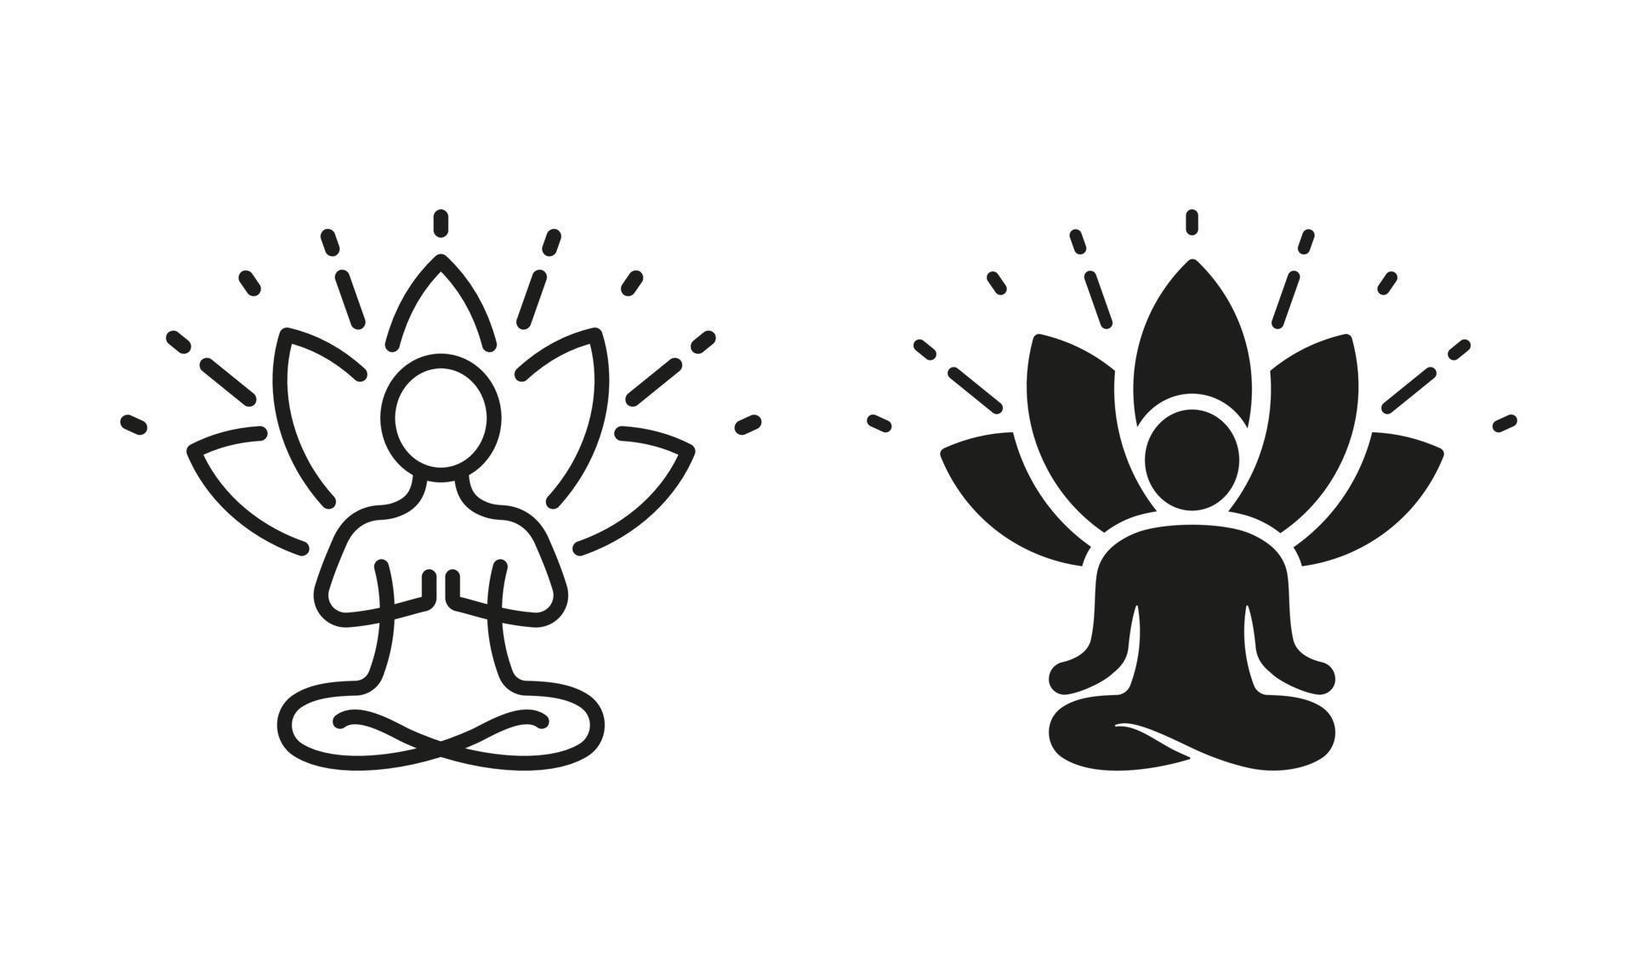 pessoa dentro pose lótus, ioga silhueta e linha ícone definir. espiritual energia meditação relaxar pictograma. meditar relaxamento asana exercício. zen bem-estar. editável AVC. isolado vetor ilustração.